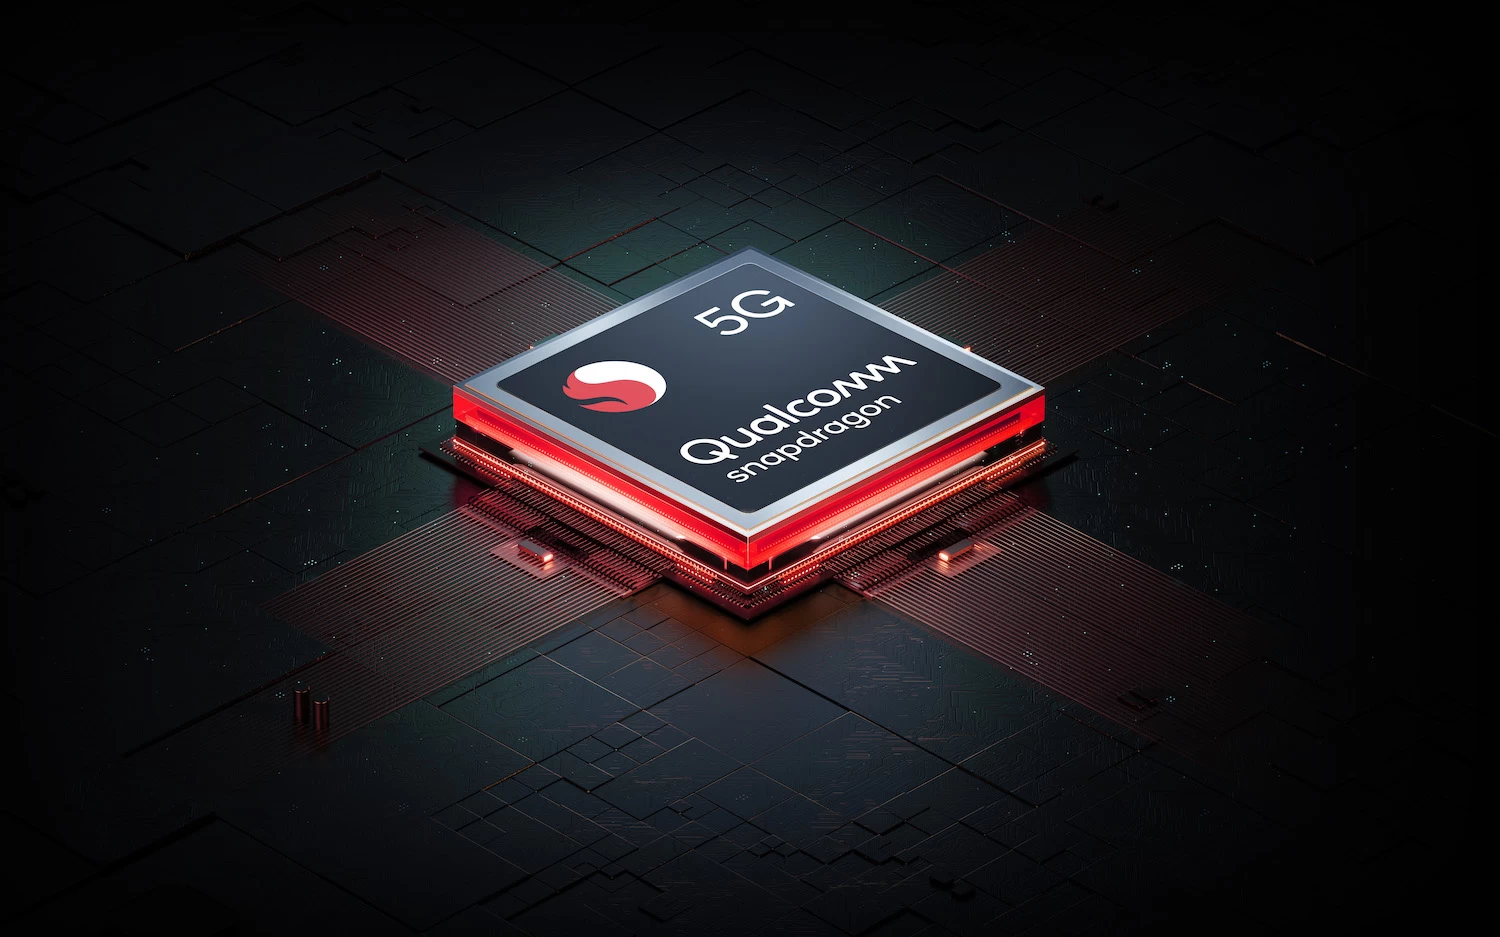 5เปิดตัว realme 10 Pro 5G Coca Cola Snapdragon 695 5G processor สำเนา | Coca-Cola Edition | รวมข้อมูล realme 10 Pro 5G Coca-Cola Edition รุ่นพิเศษสายโค๊ก เปิดราคา 11,999 บาท